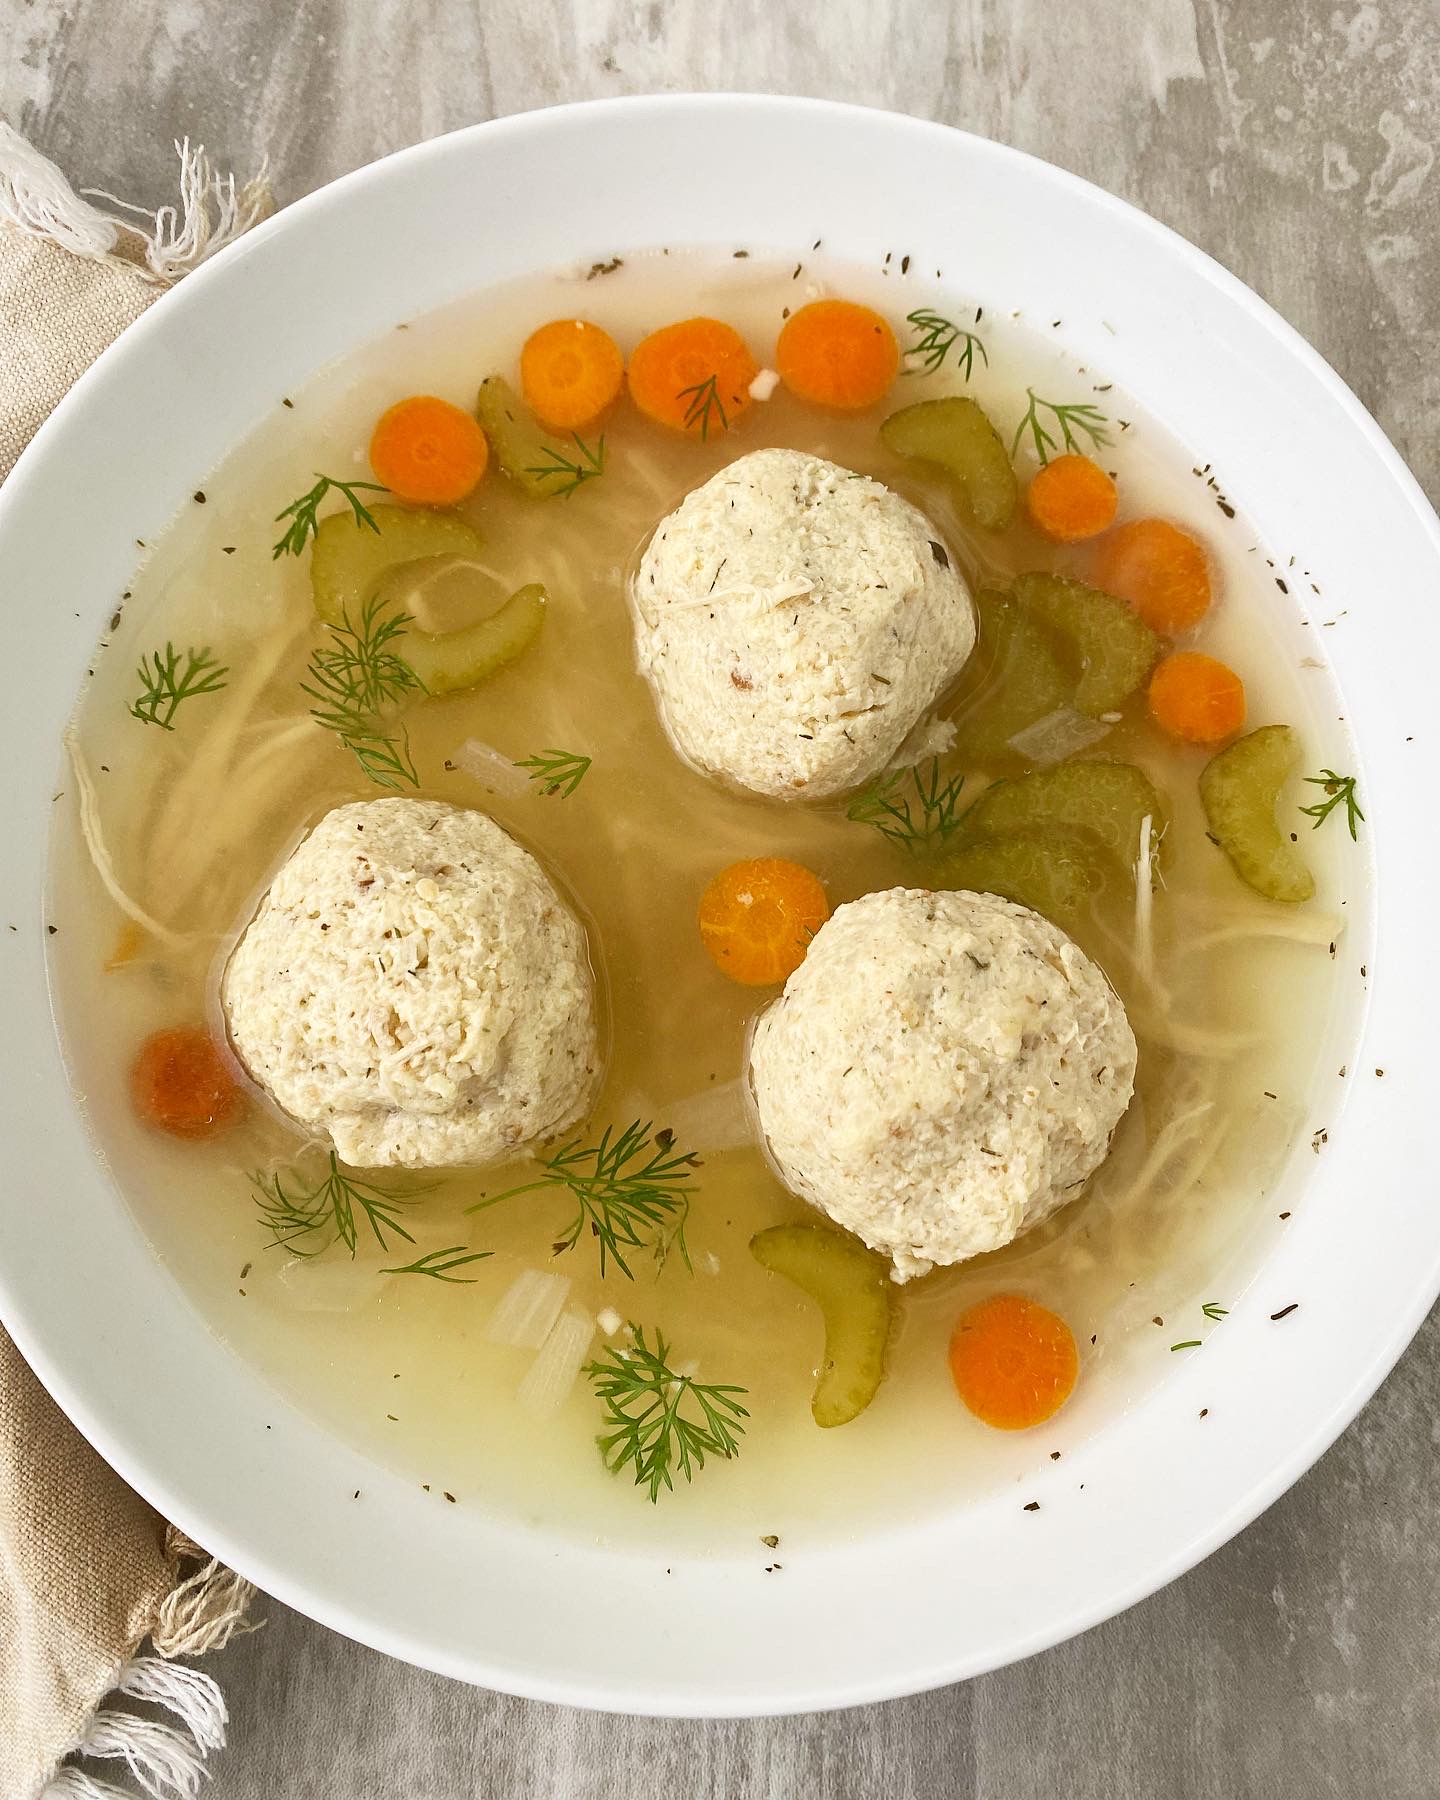 Vegetarian Matzo Ball Soup